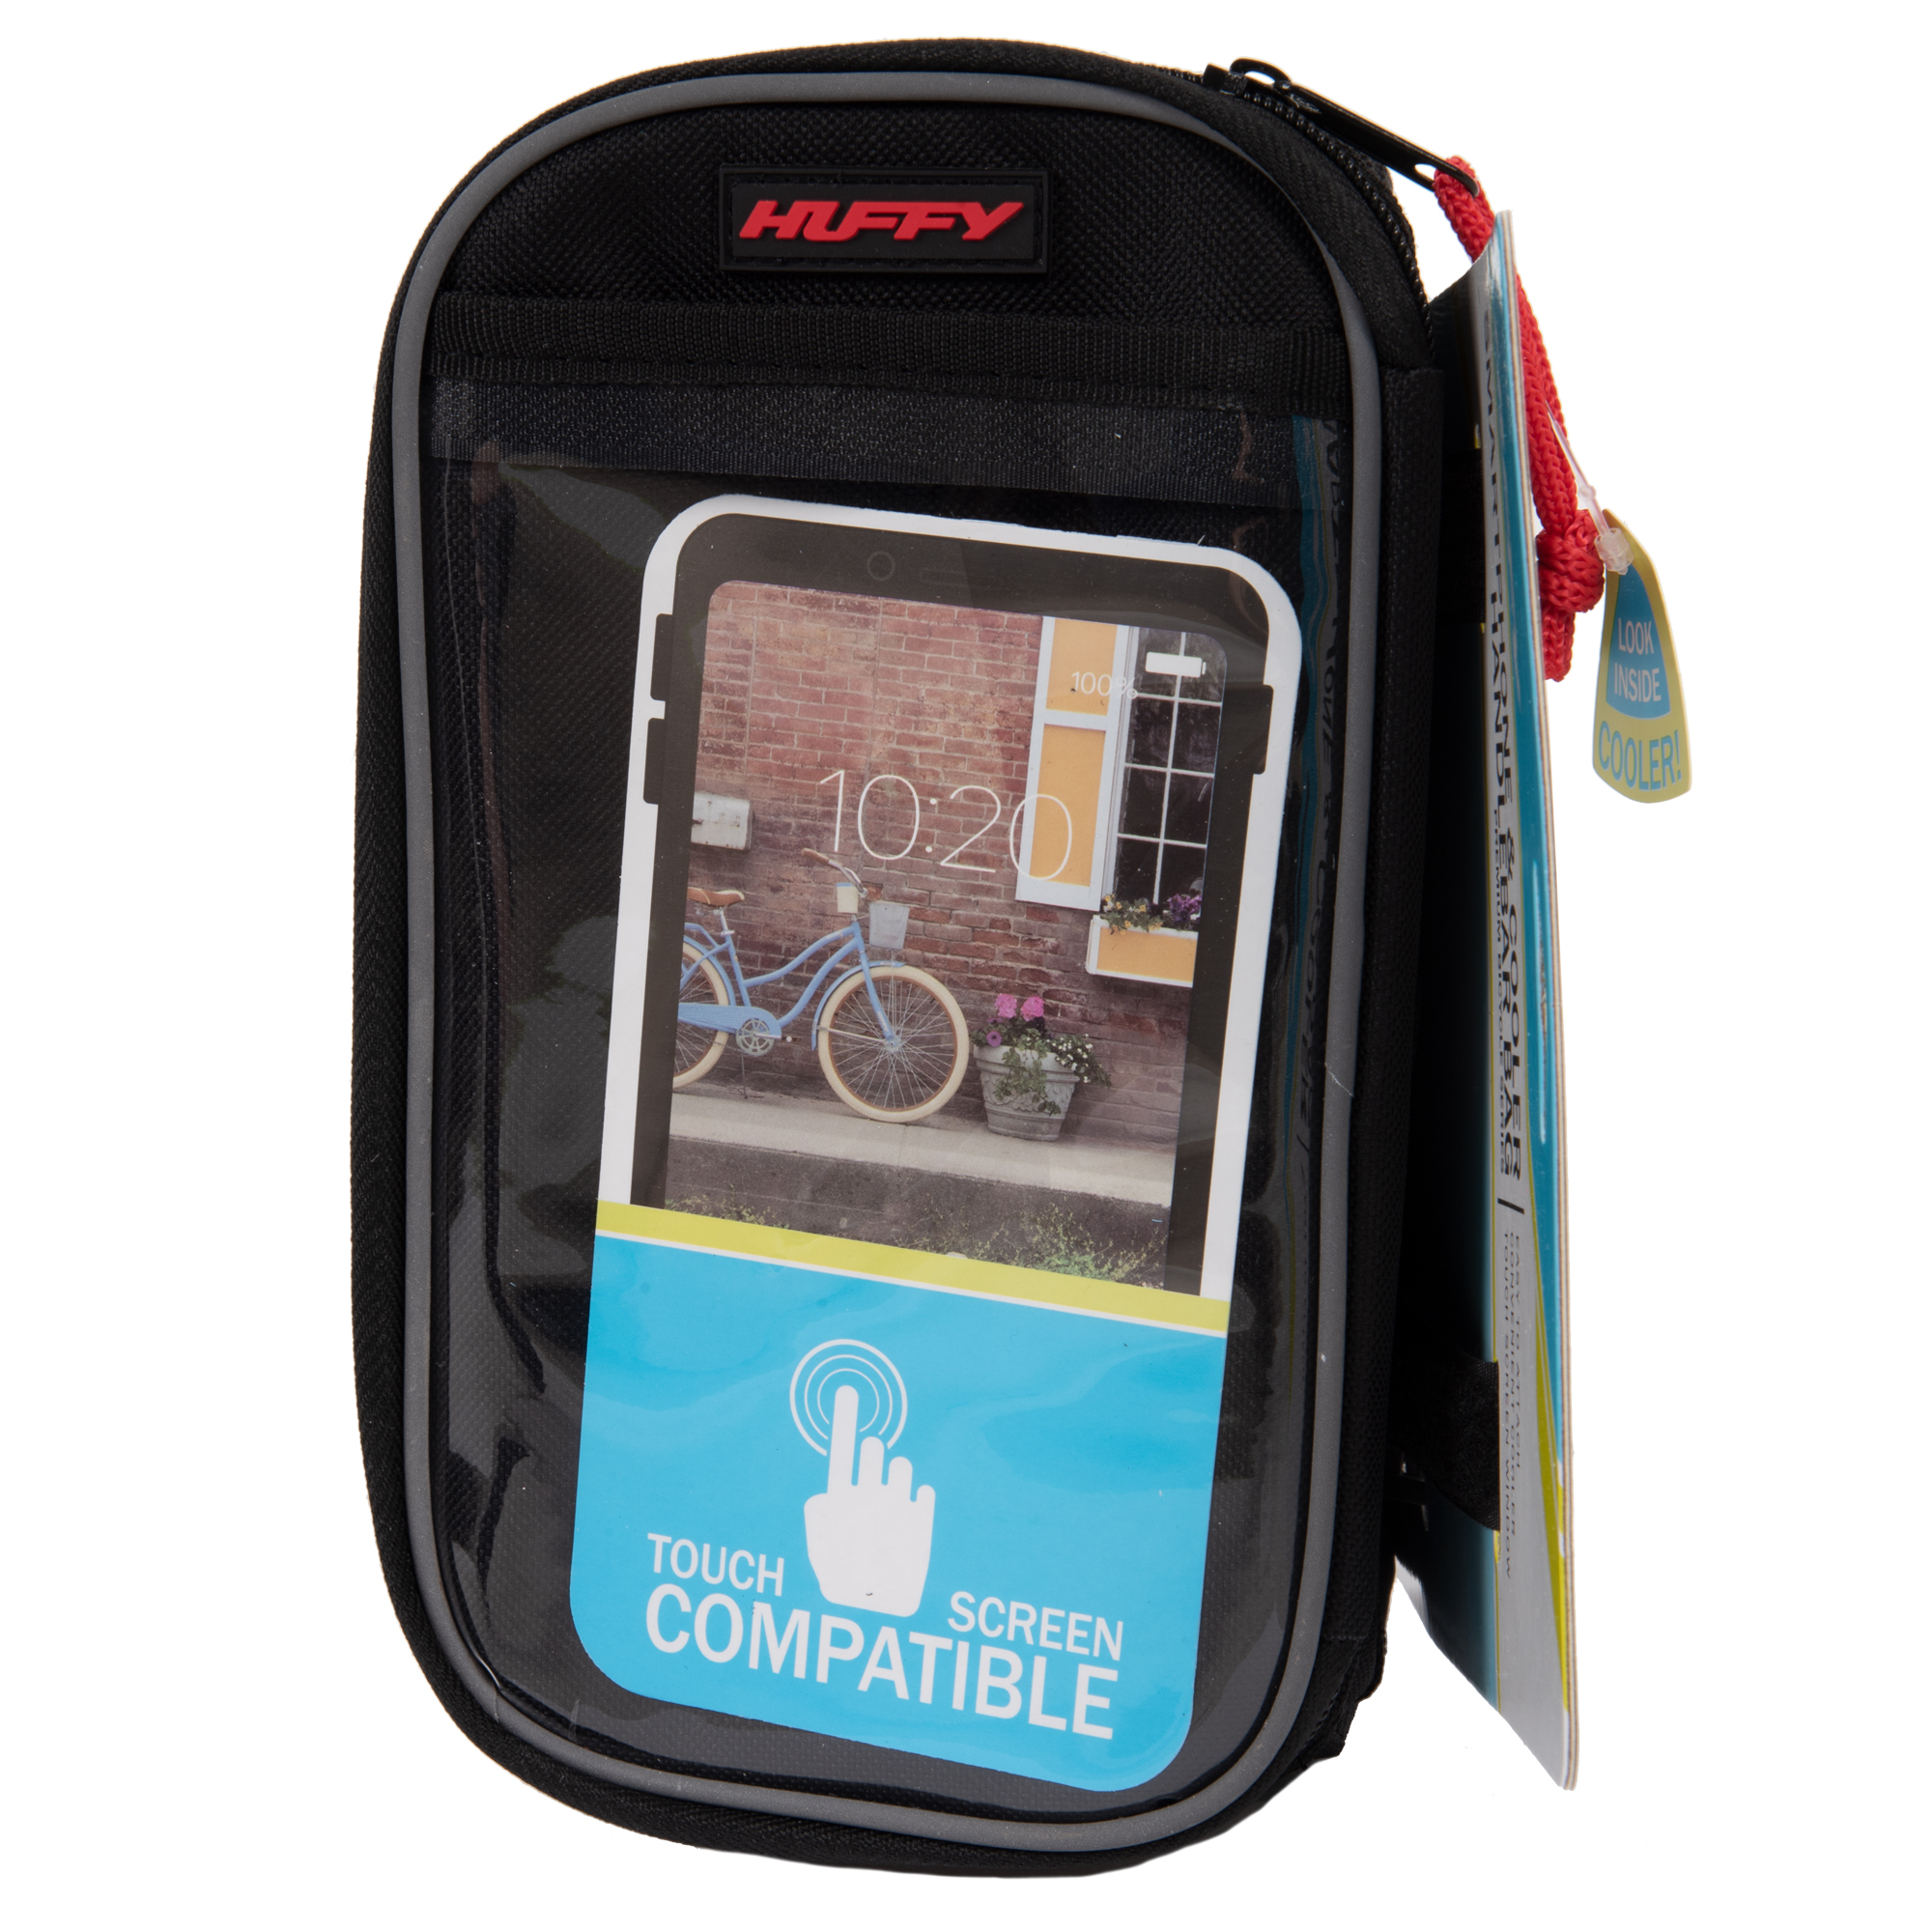 Huffy Handlebar Cooler Bag with Smartphone Pocket, Black - image 5 of 5